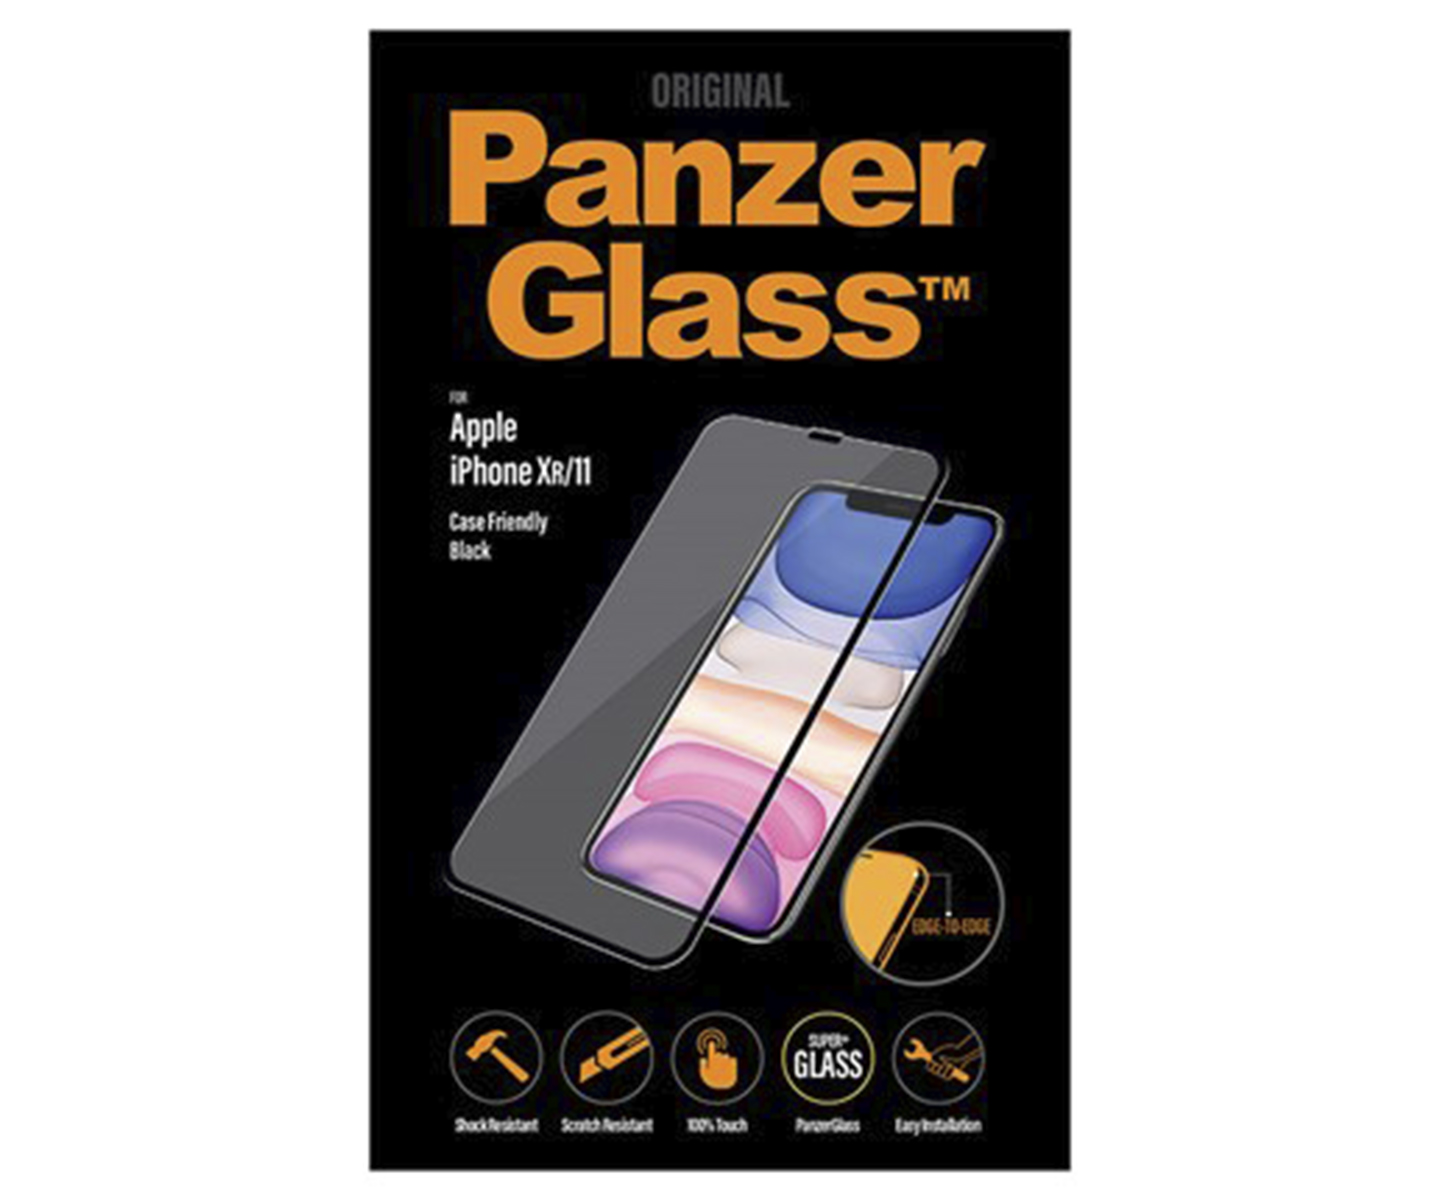 PanzerGlass Apple iPhone Xr/11 Cover venlig, Kant til kant - Sort (Antibakteriel)